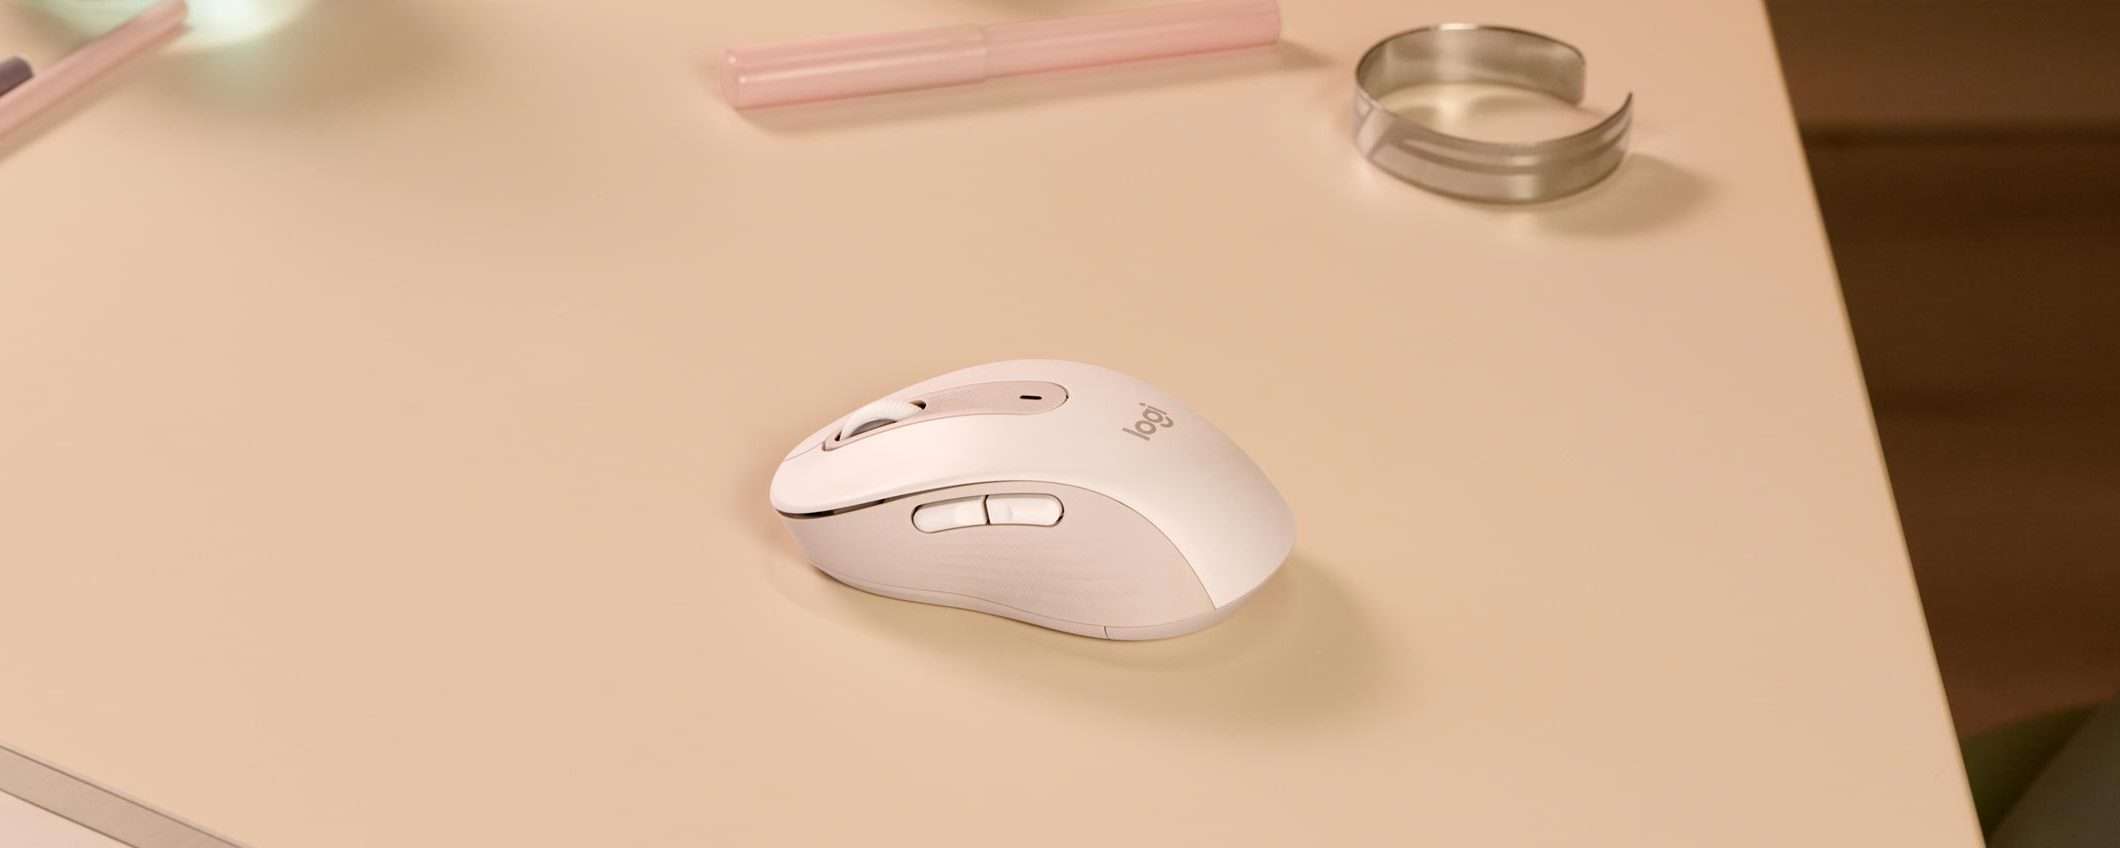 Il mouse Logitech Signature M650 è già su Amazon